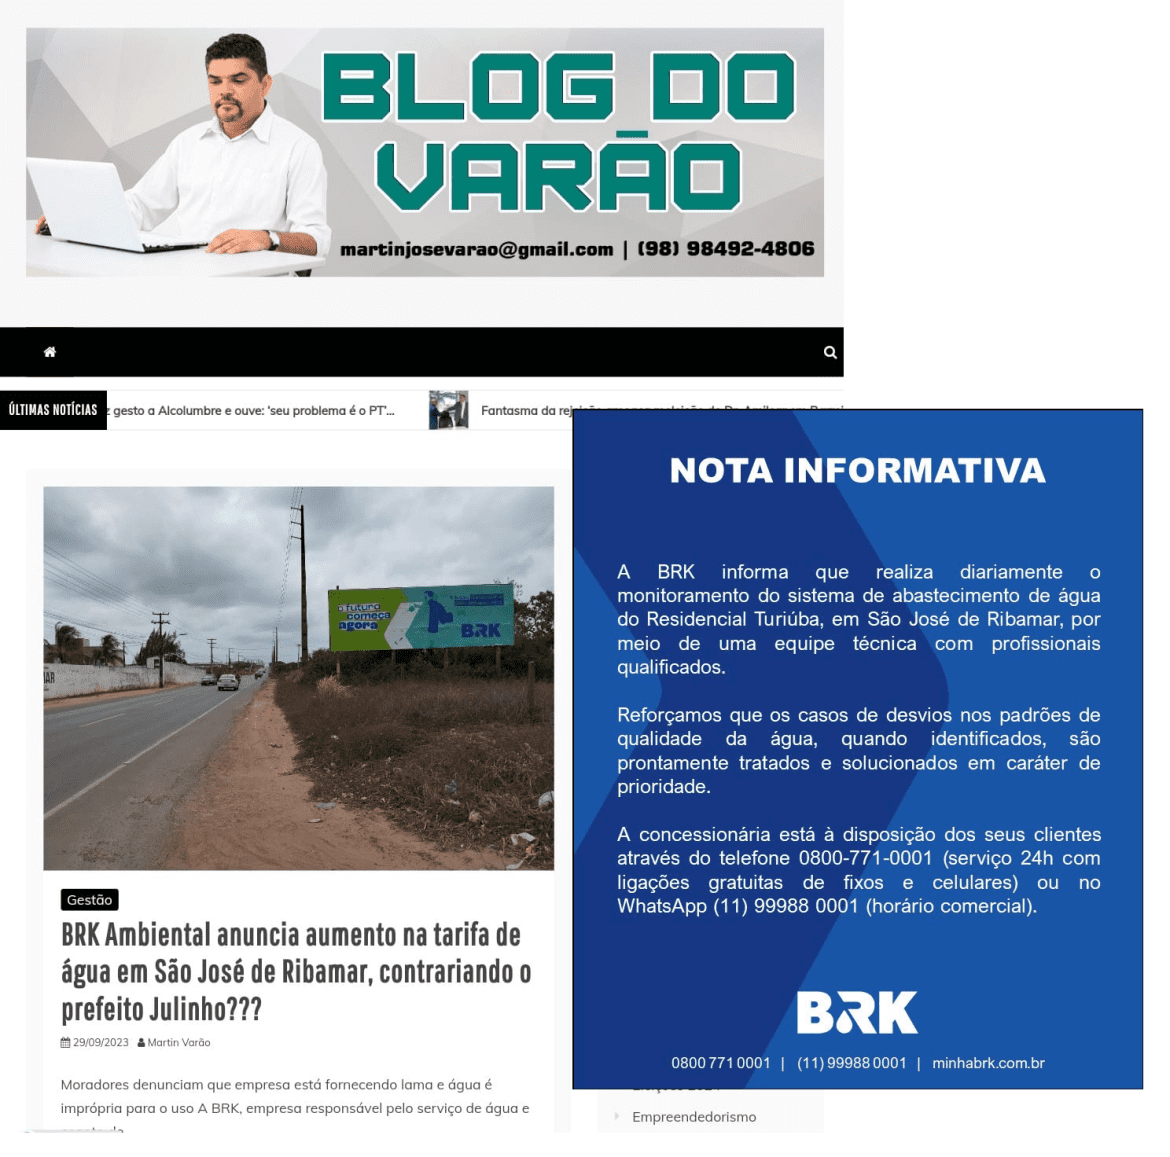 BRK Ambiental envia nota ao blog, esclarecendo qualidade de serviços cobrados pela população de São José de Ribamar…